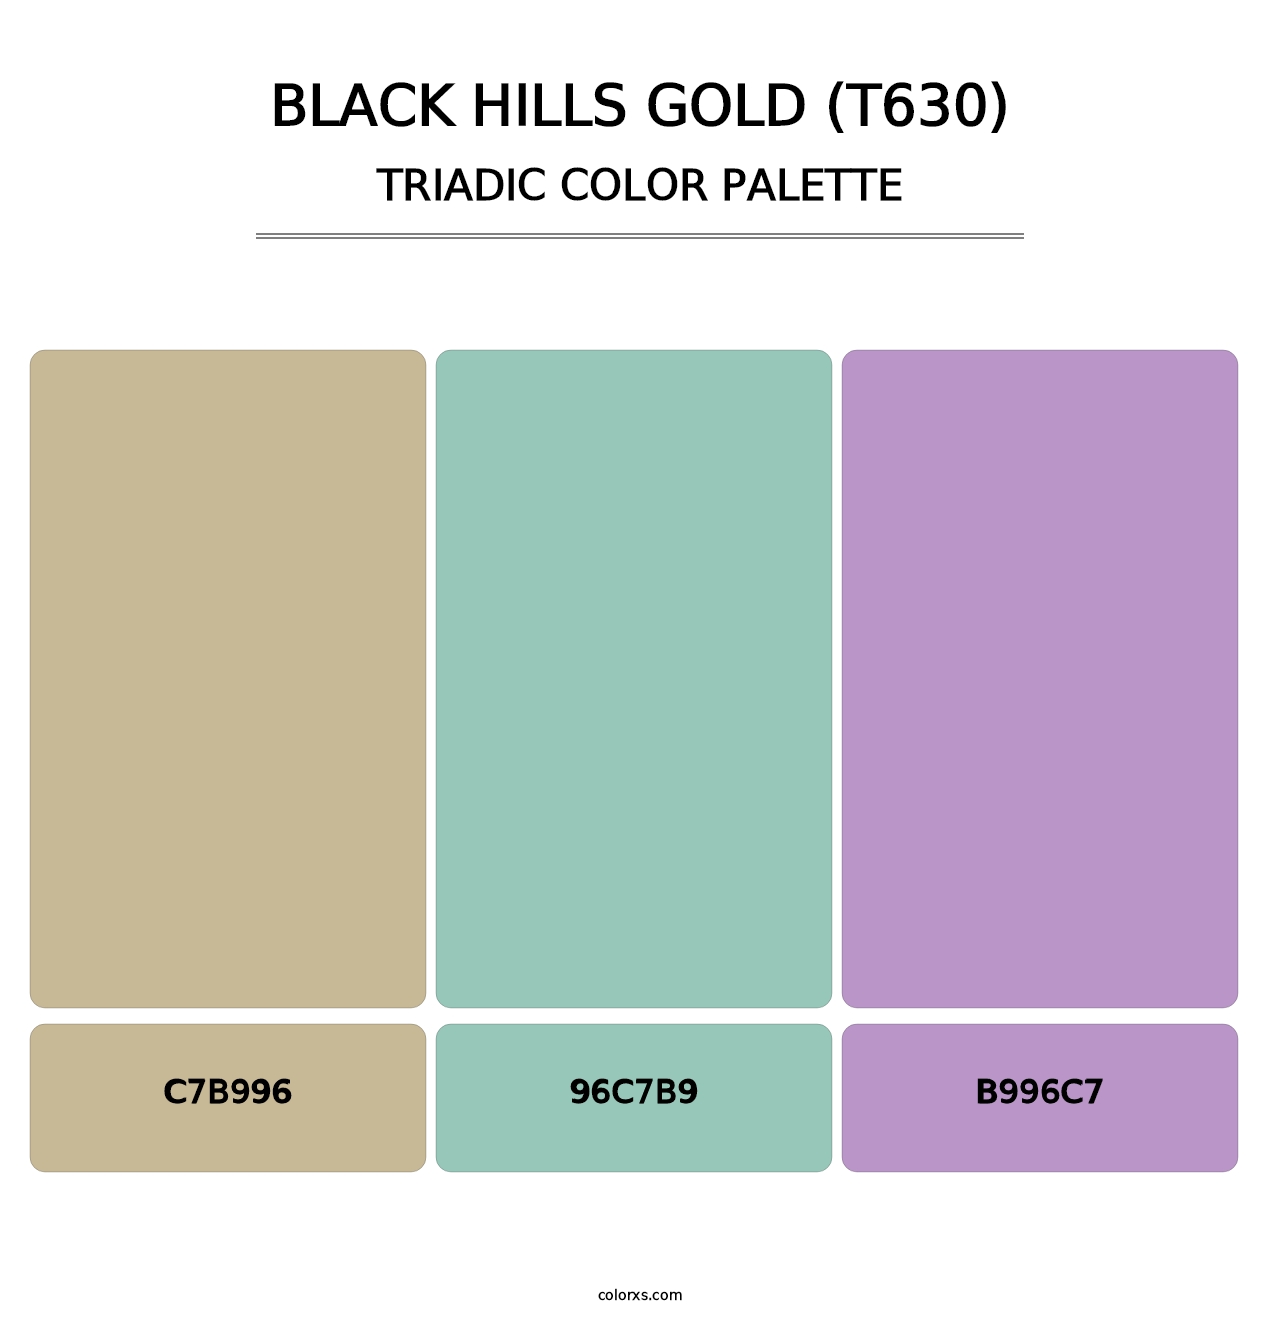 Black Hills Gold (T630) - Triadic Color Palette